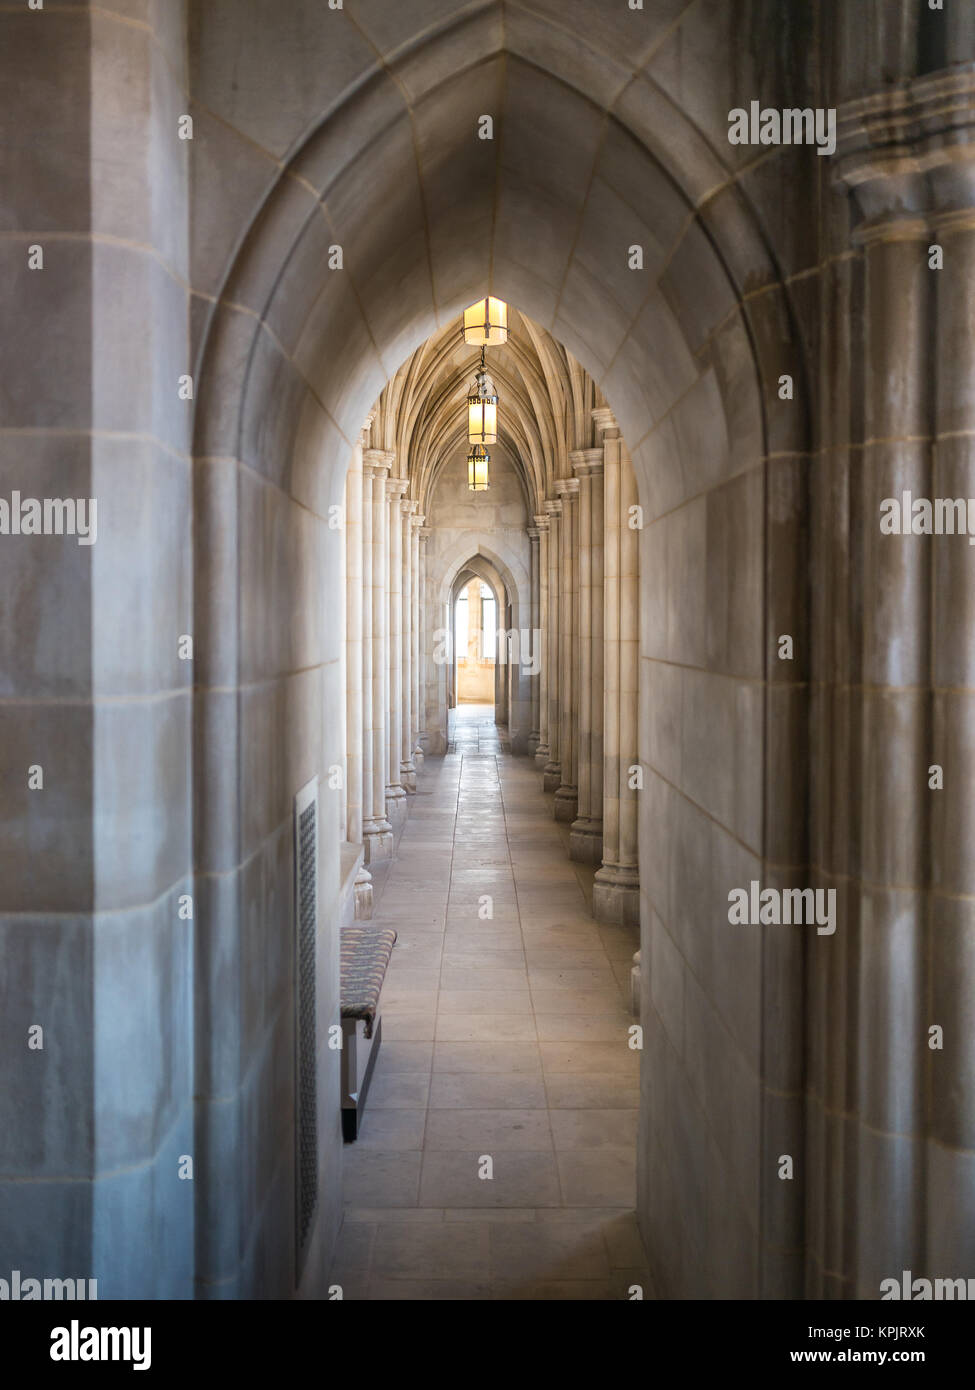 Intérieur de la cathédrale nationale de Washington dans une journée ensoleillée. La cathédrale est une église située à Washington, D.C. Banque D'Images